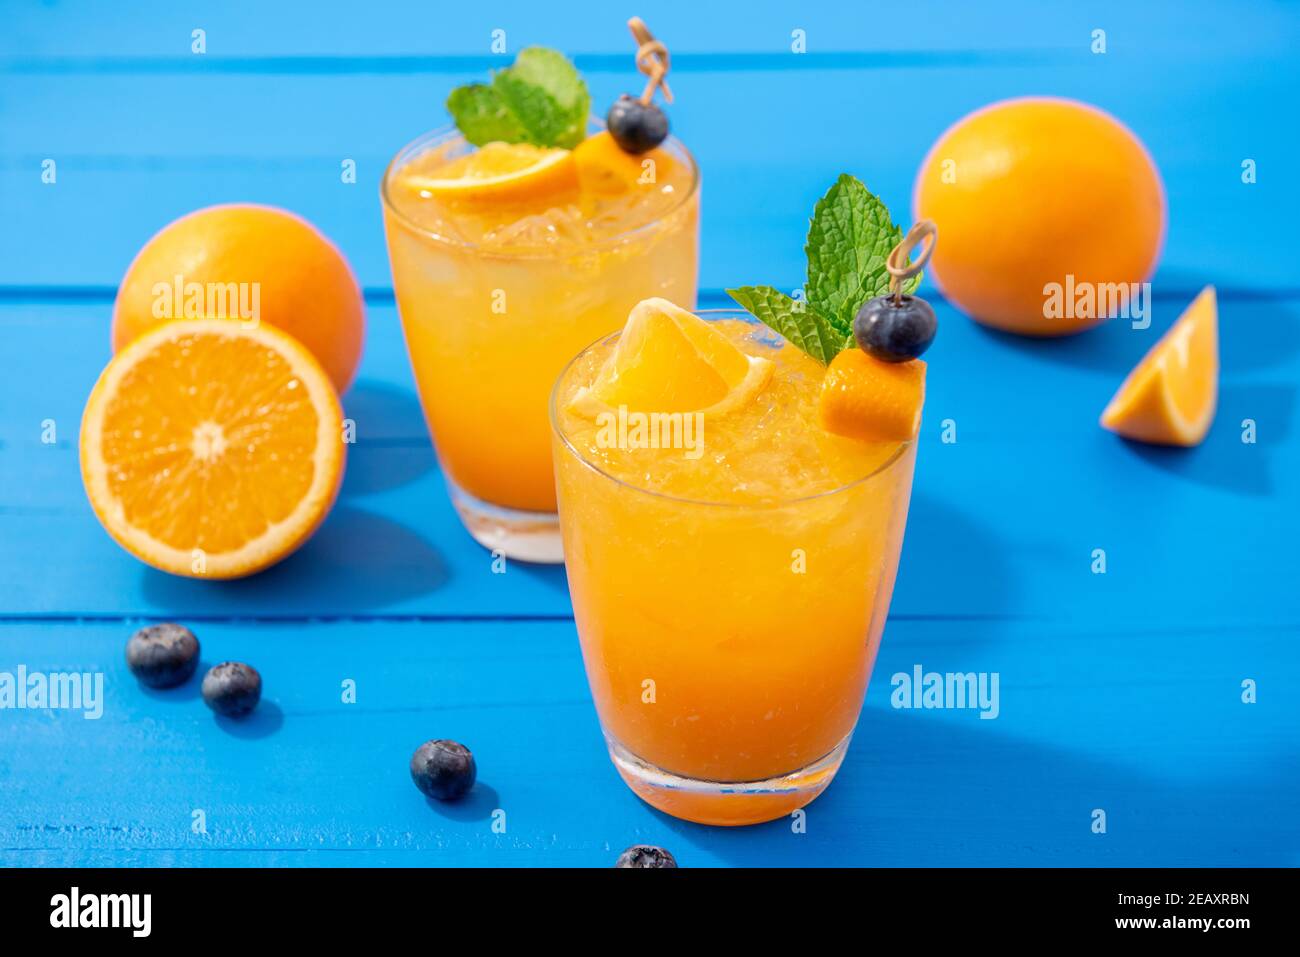 Spremute fresche di frutta spremuta bevande nei bicchieri con arance e mirtilli sul tavolo blu Foto Stock